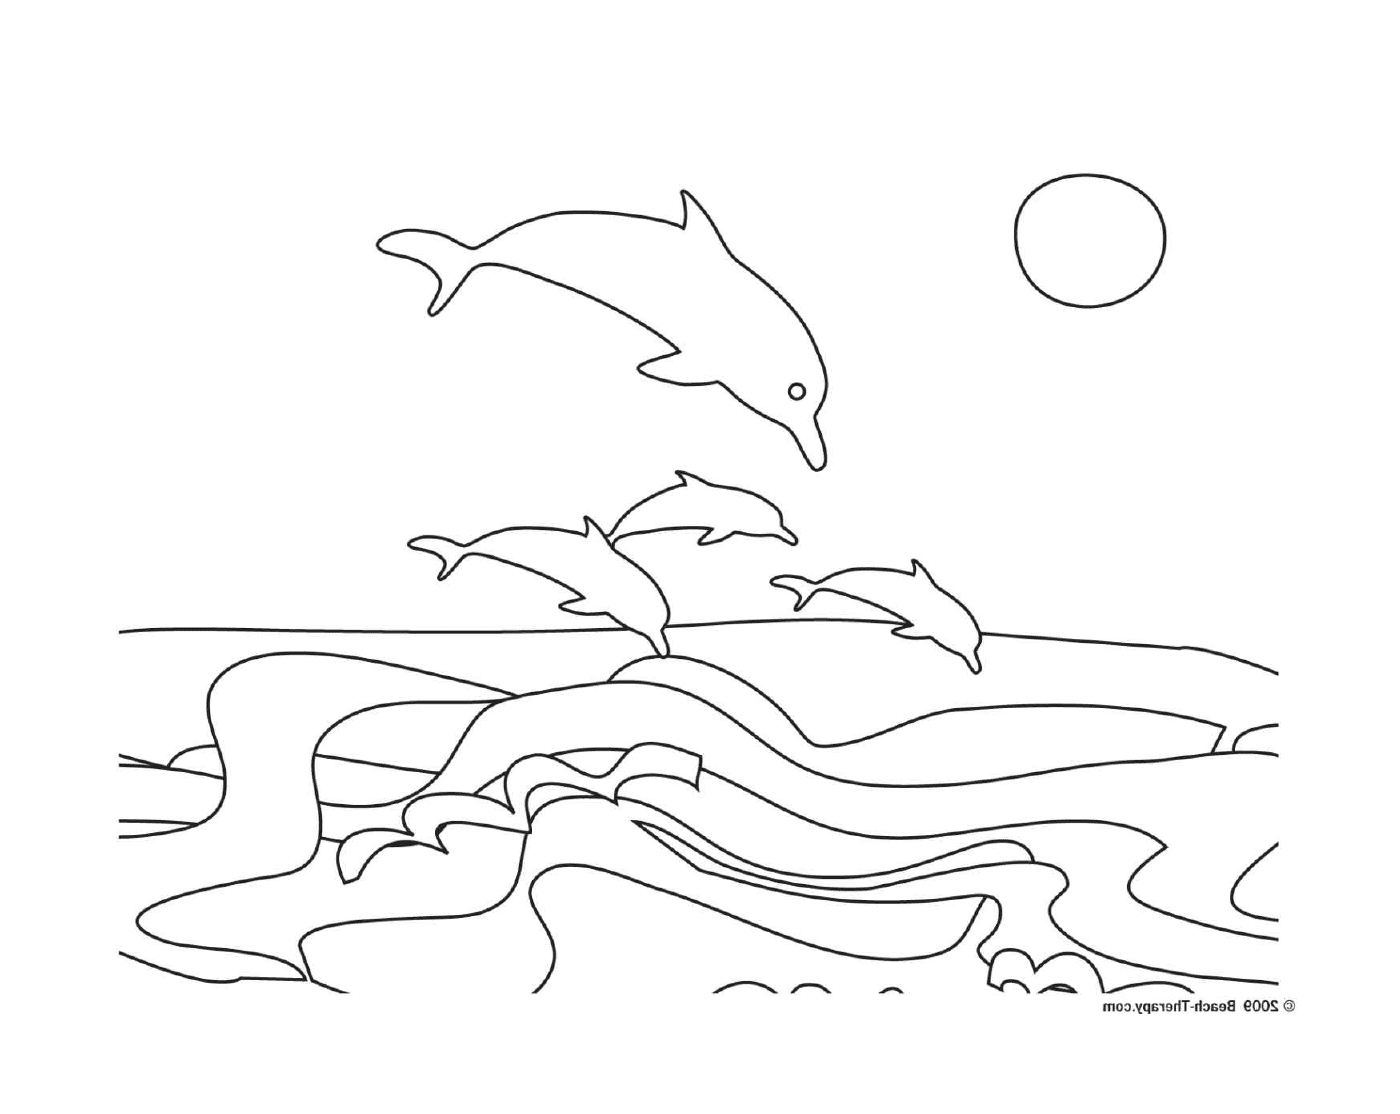  Gruppo di delfini che saltano fuori dall'acqua 